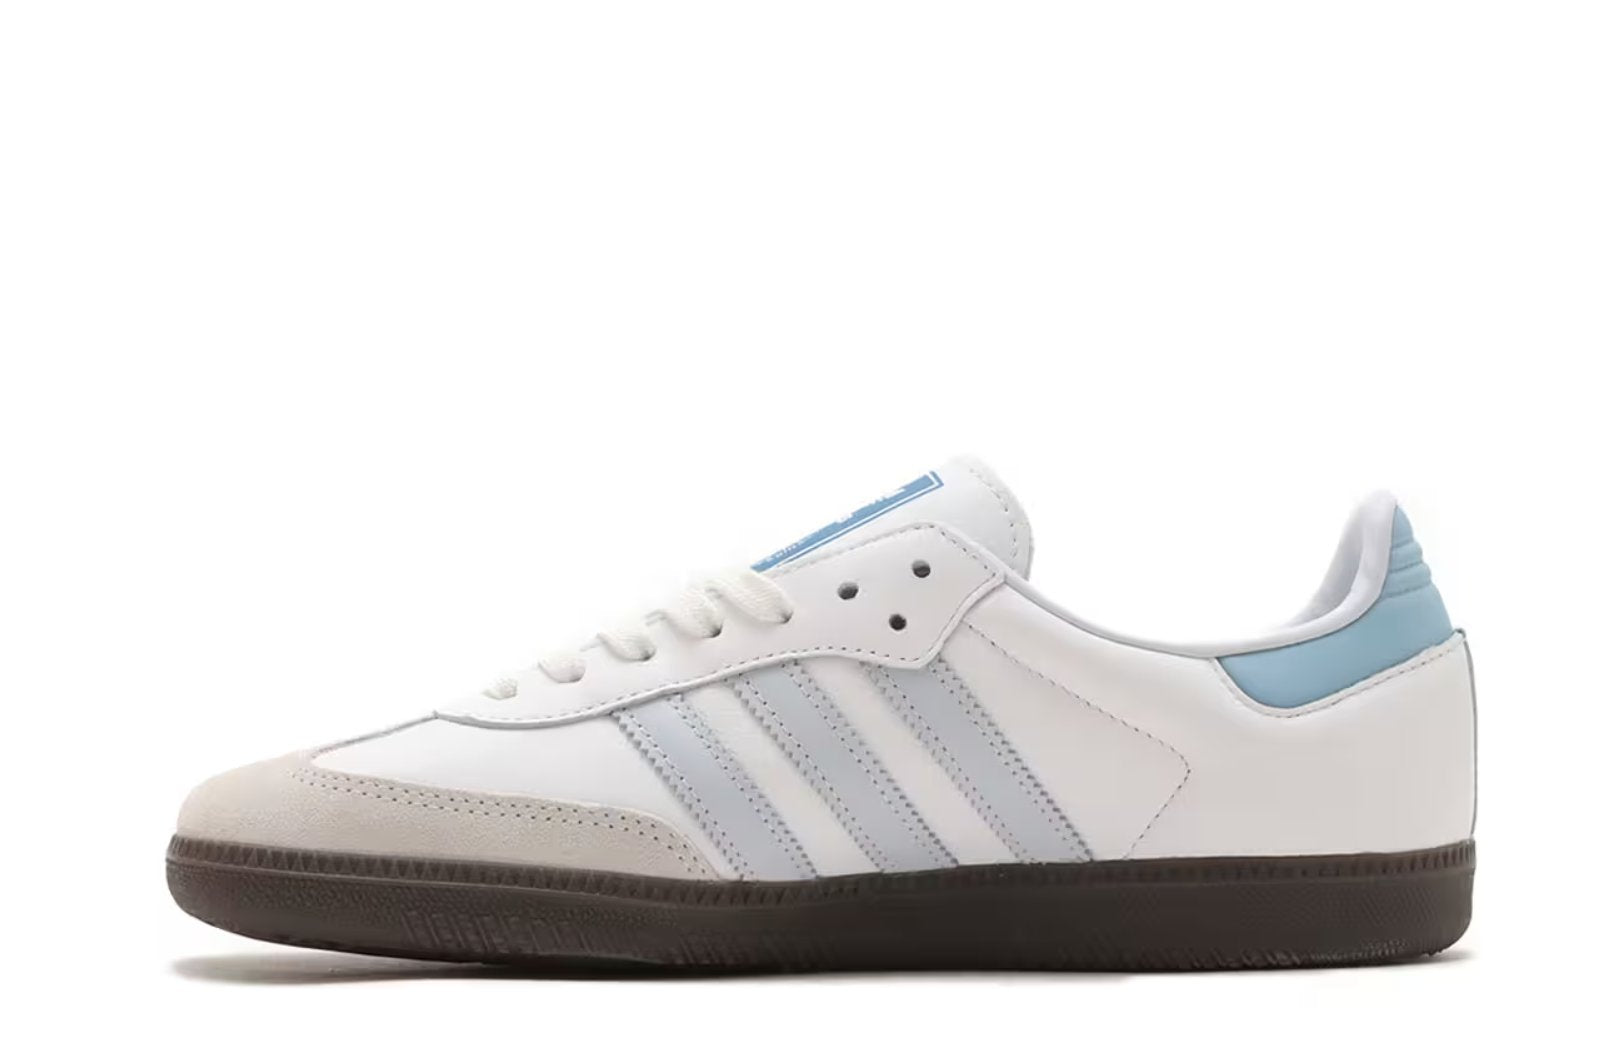 Adidas Originals Samba OG - White / Light Blue